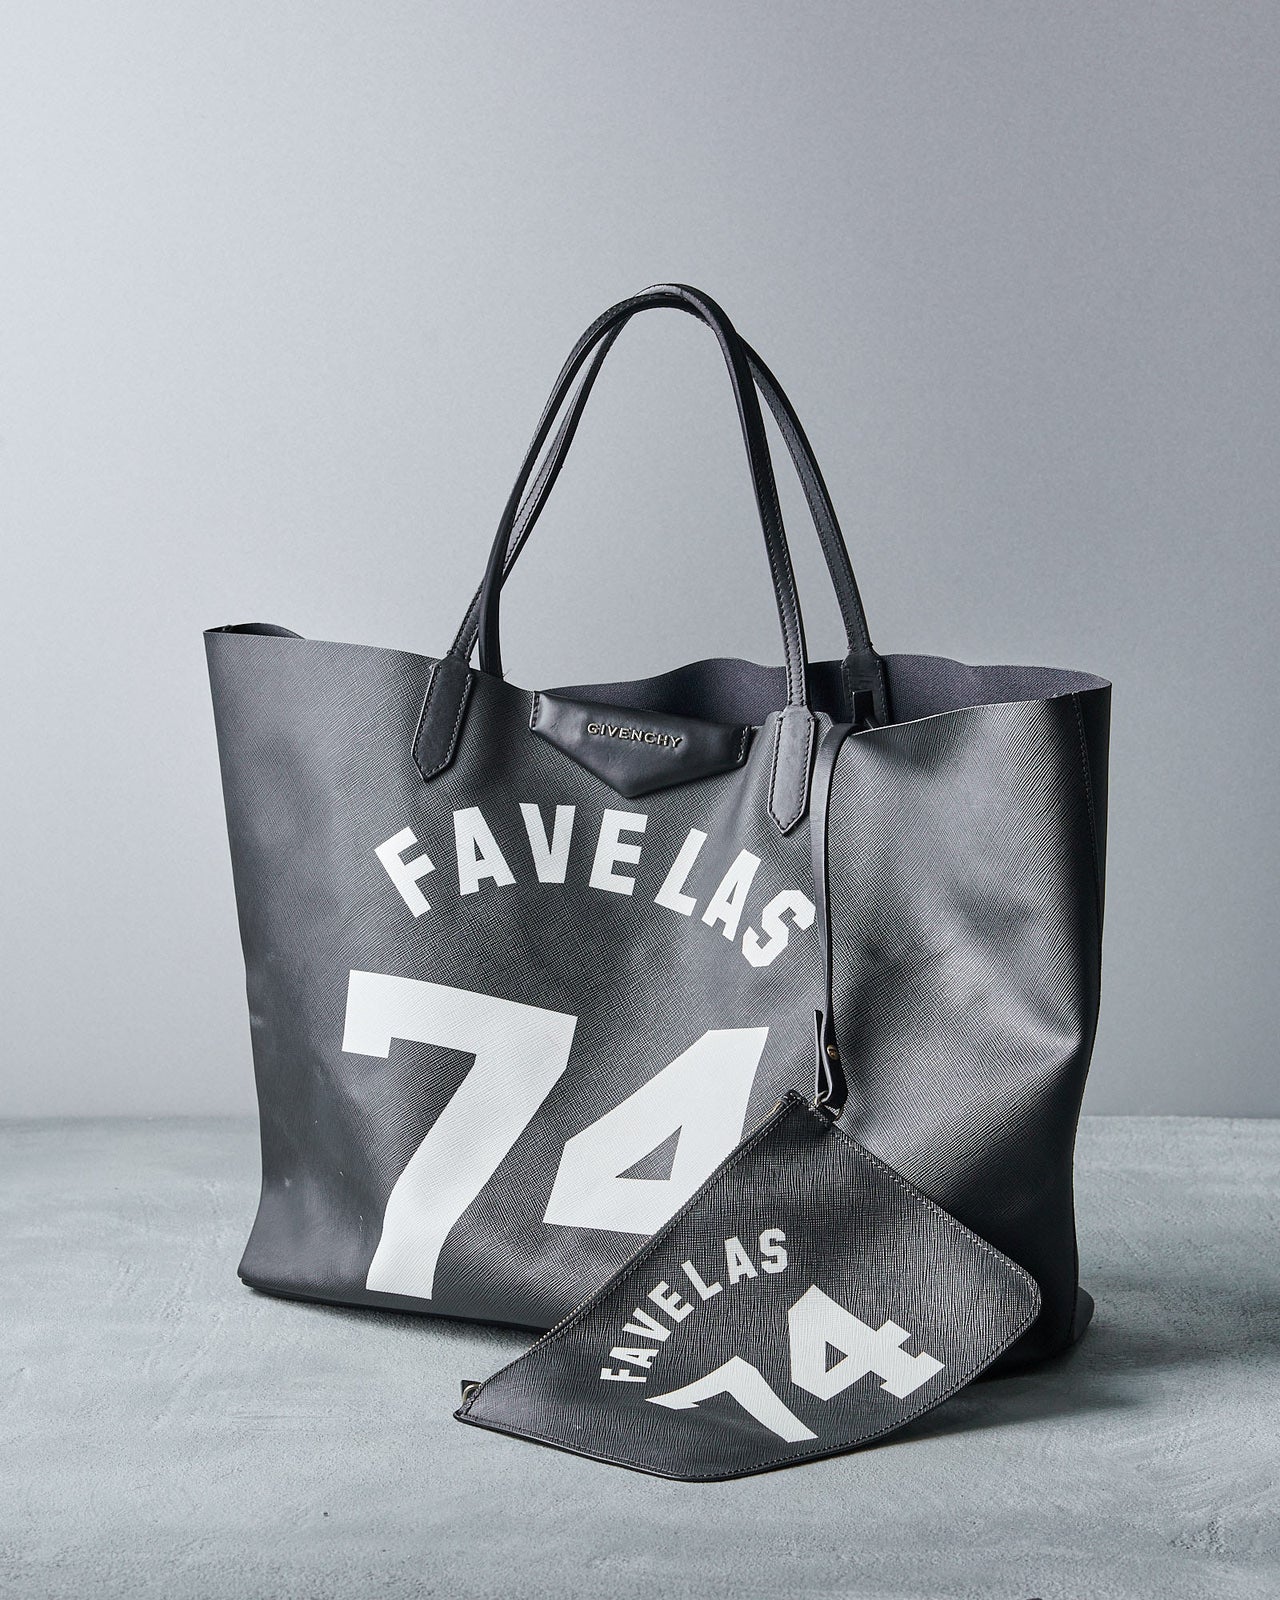 Givenchy Favelas 74 Tote Bag